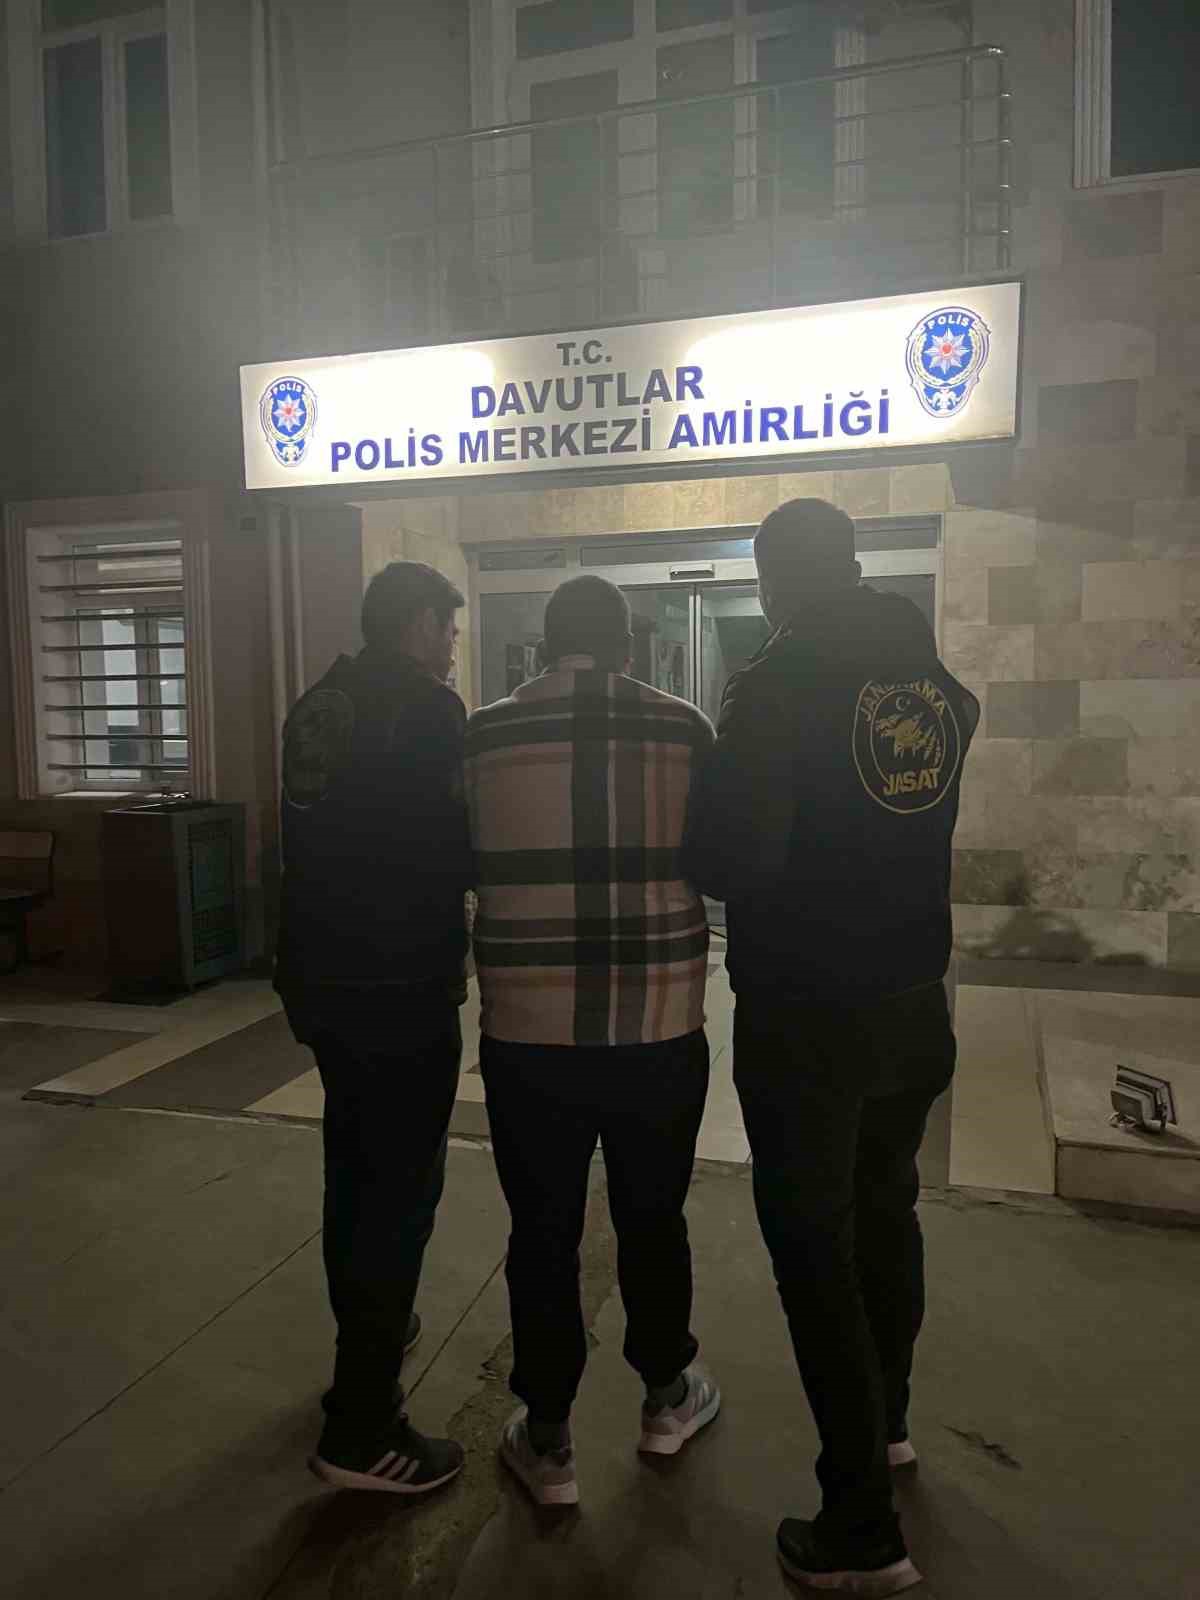 Burdur’da asayiş uygulamalarında yakalanan 13 firari hükümlü cezaevine gönderildi
